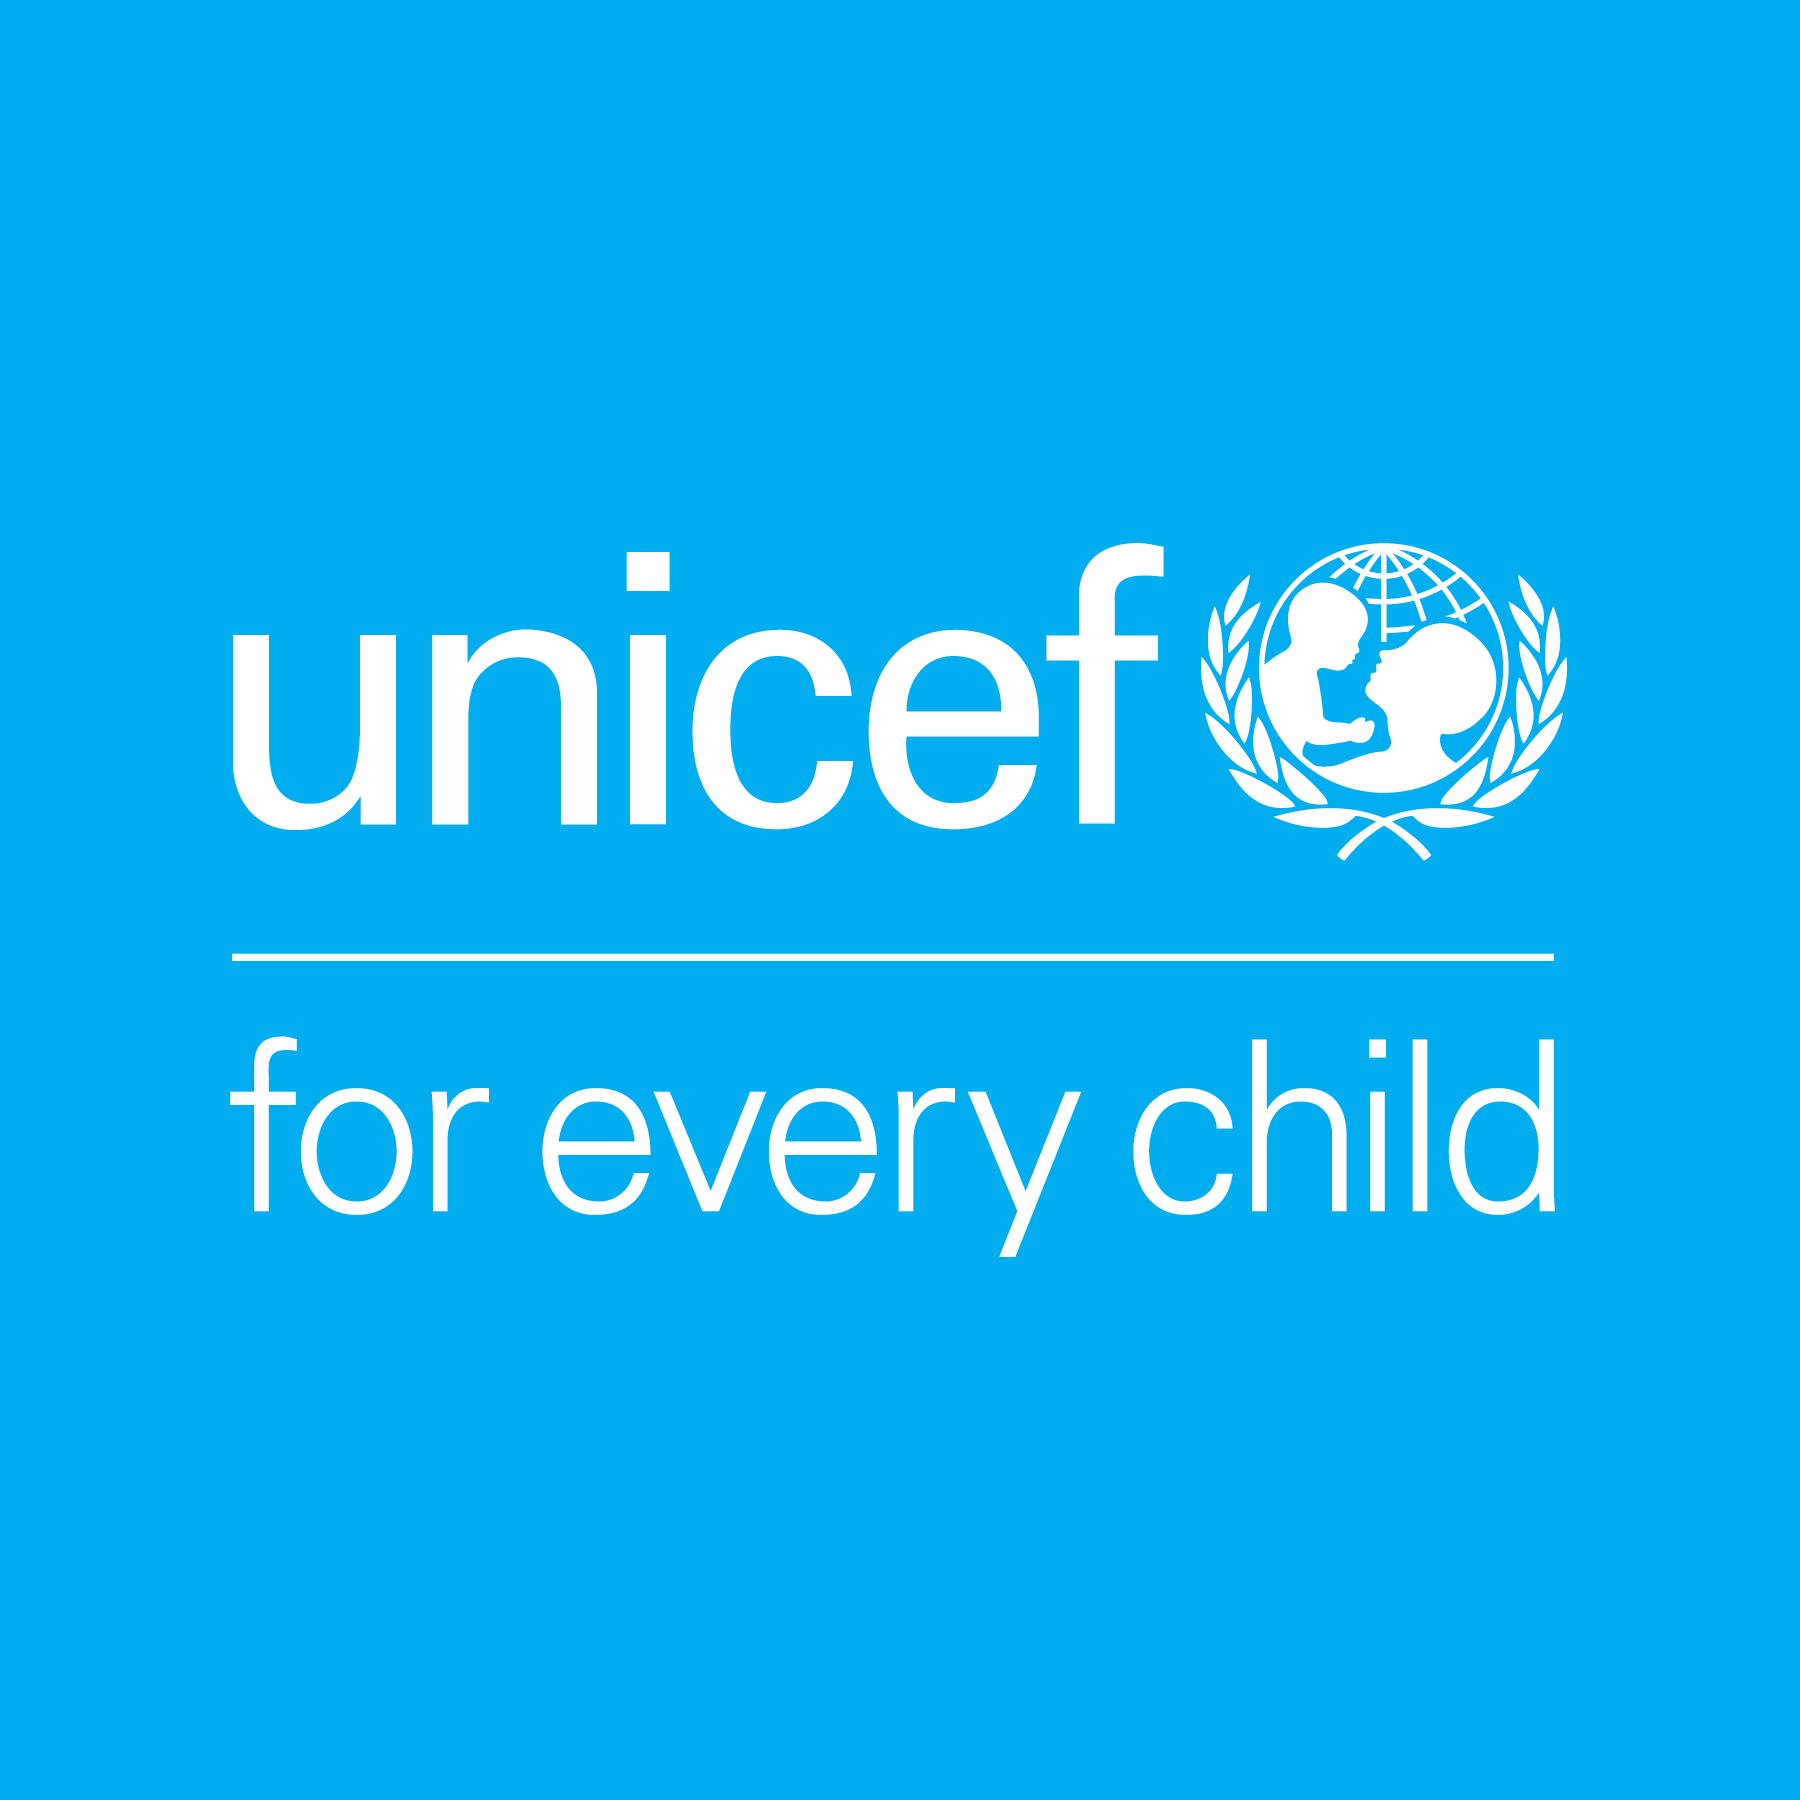 unicef logo